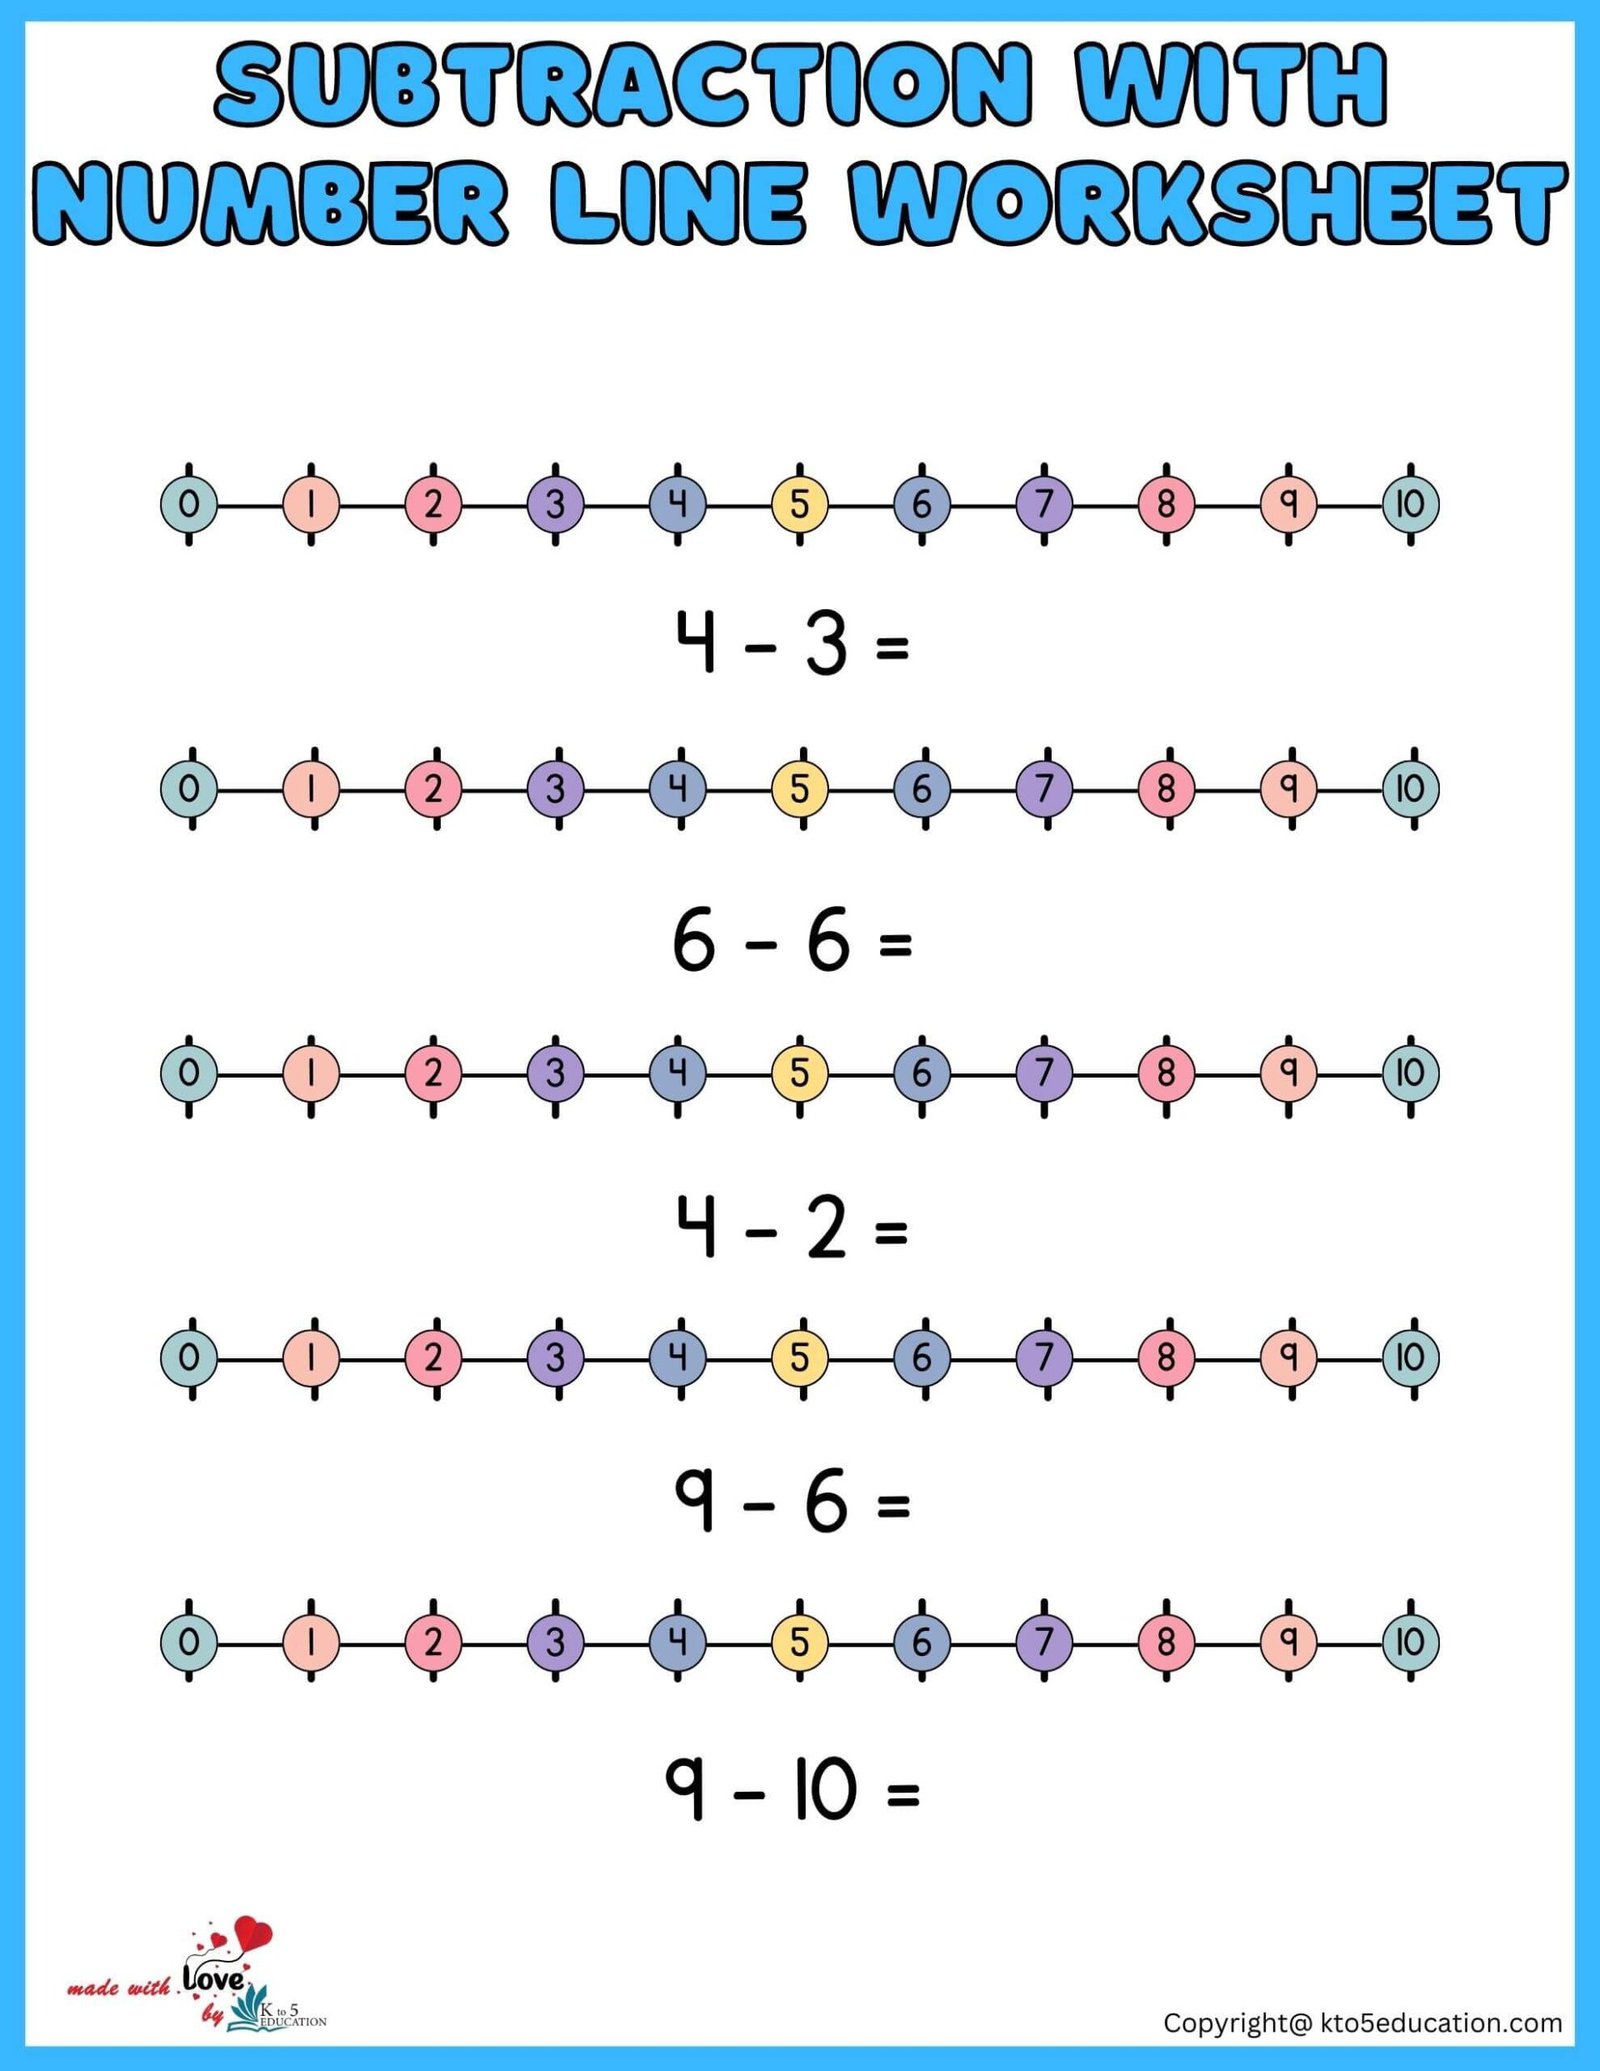 Number Line Worksheets For Third Grade